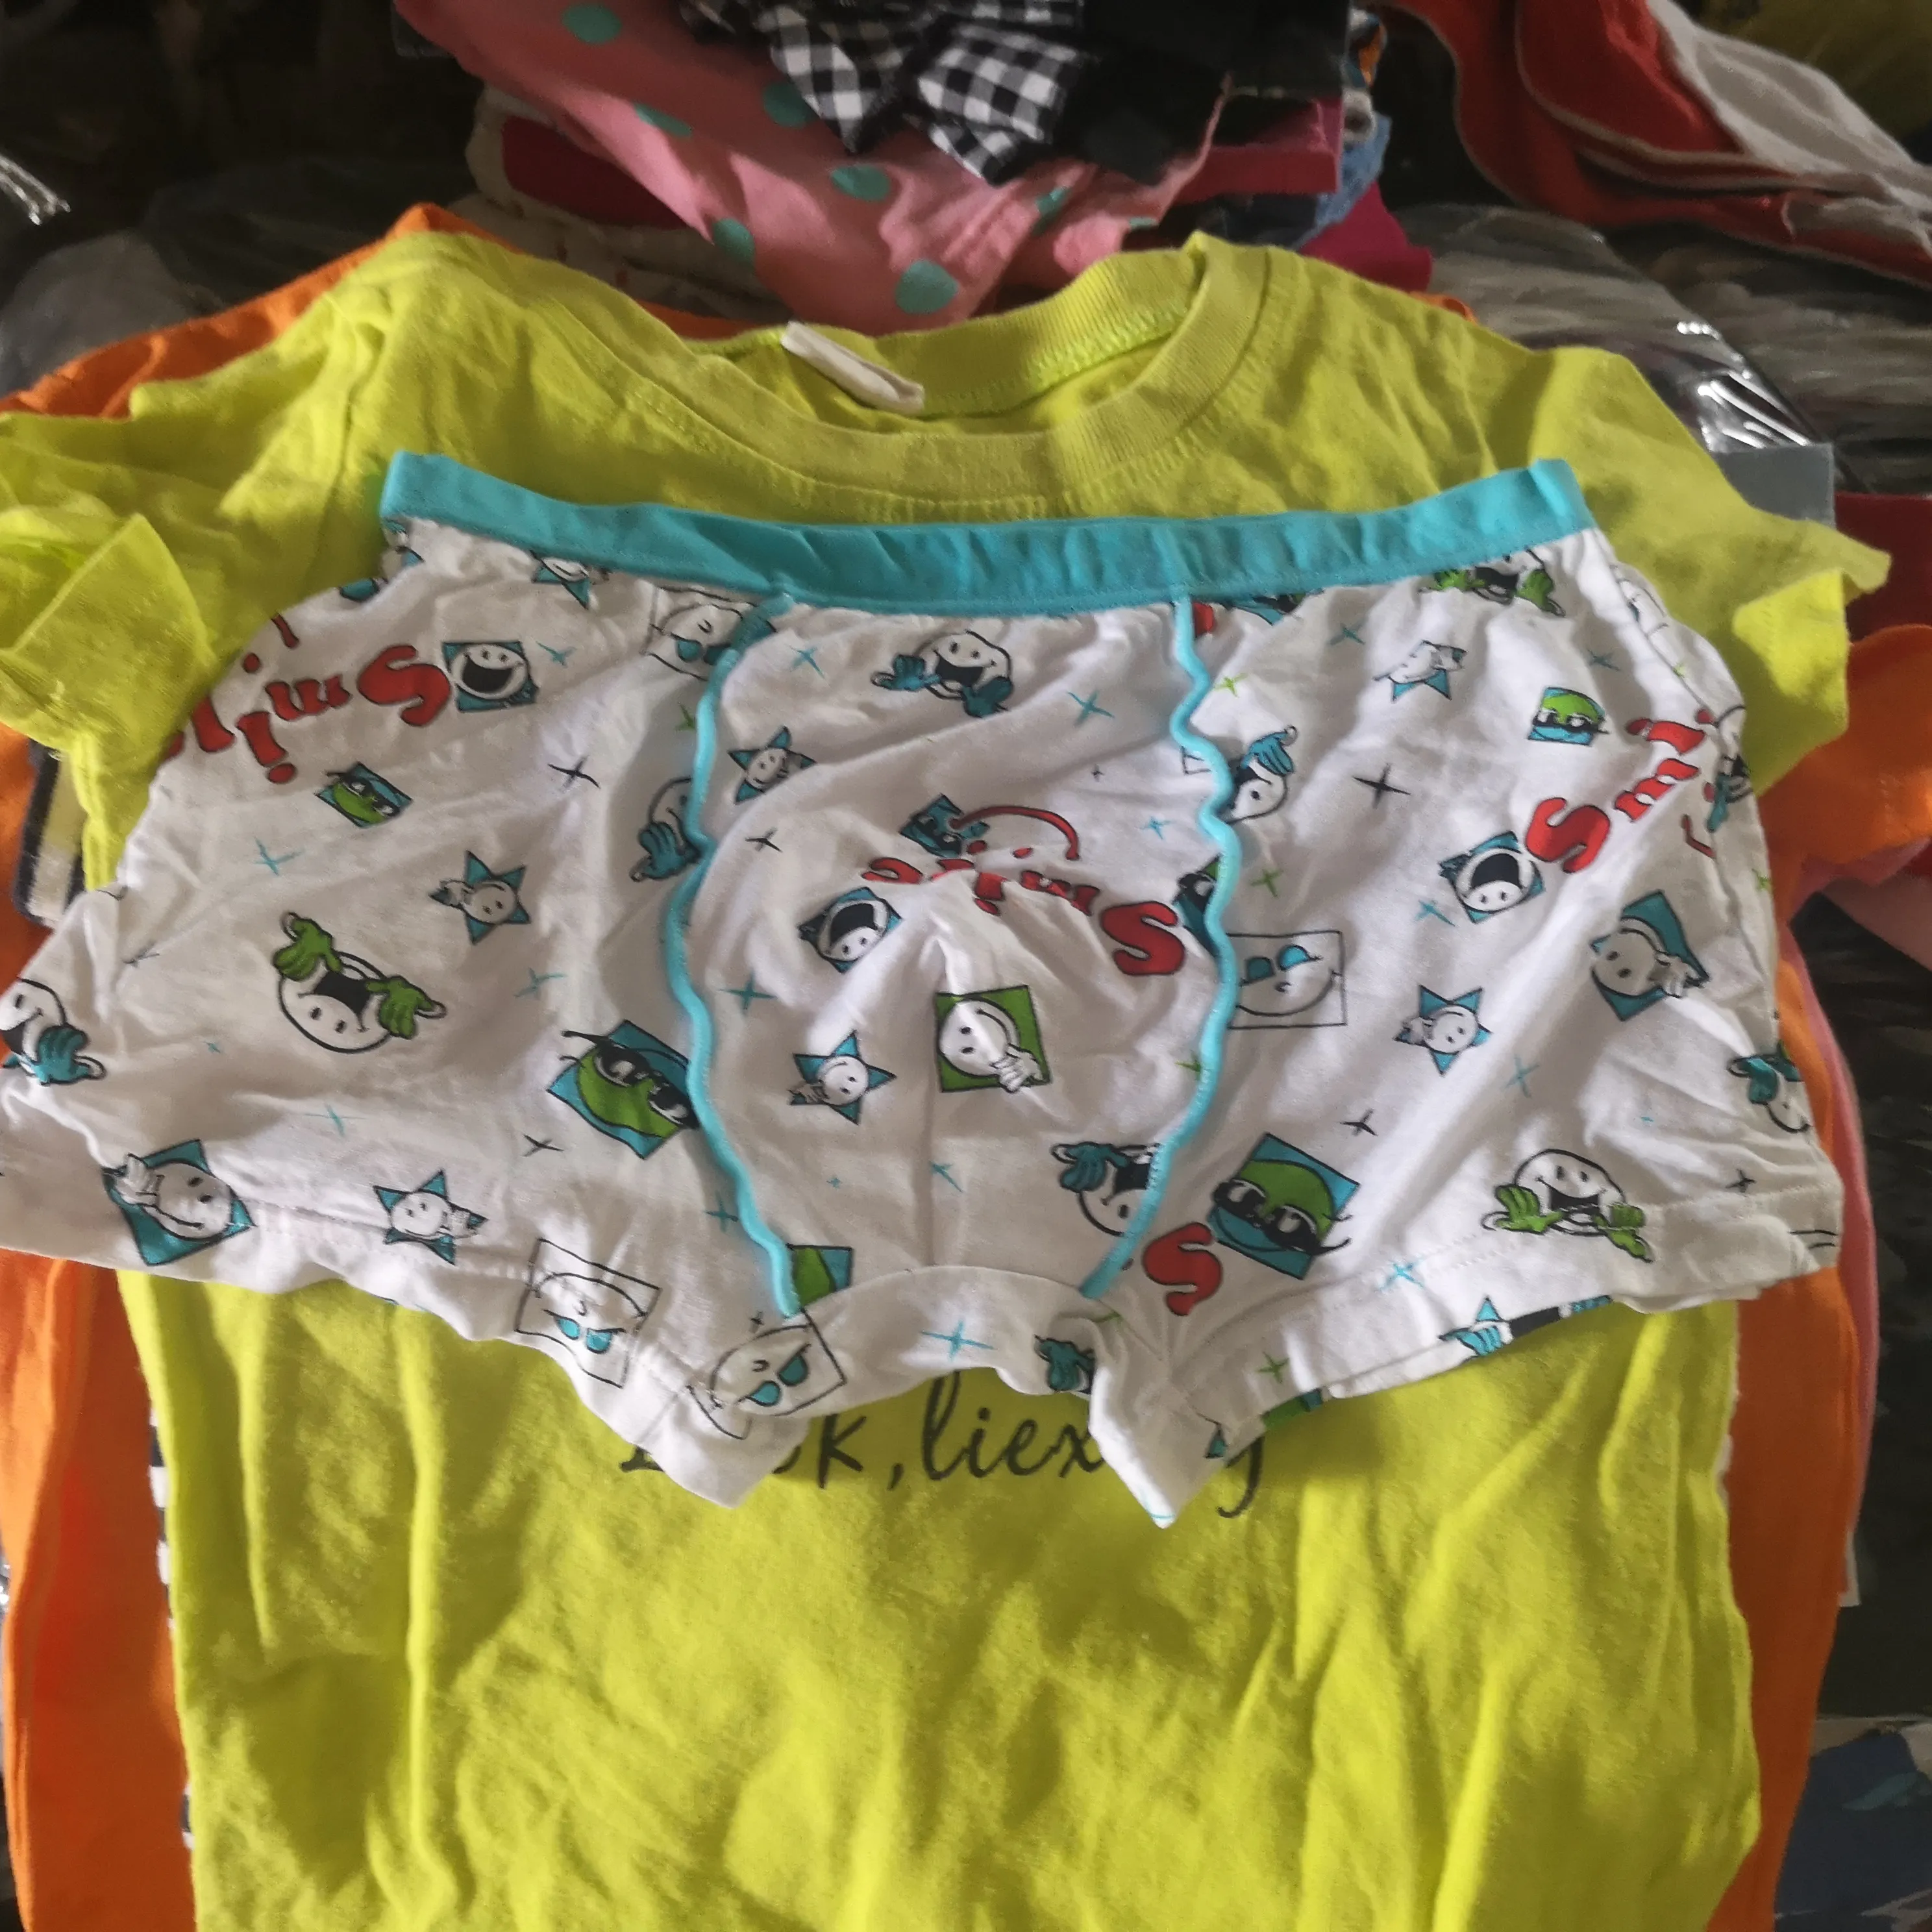 चीन से दूसरे हाथ गांठें बच्चे में कपड़े का इस्तेमाल किया बिक्री पर clotheing